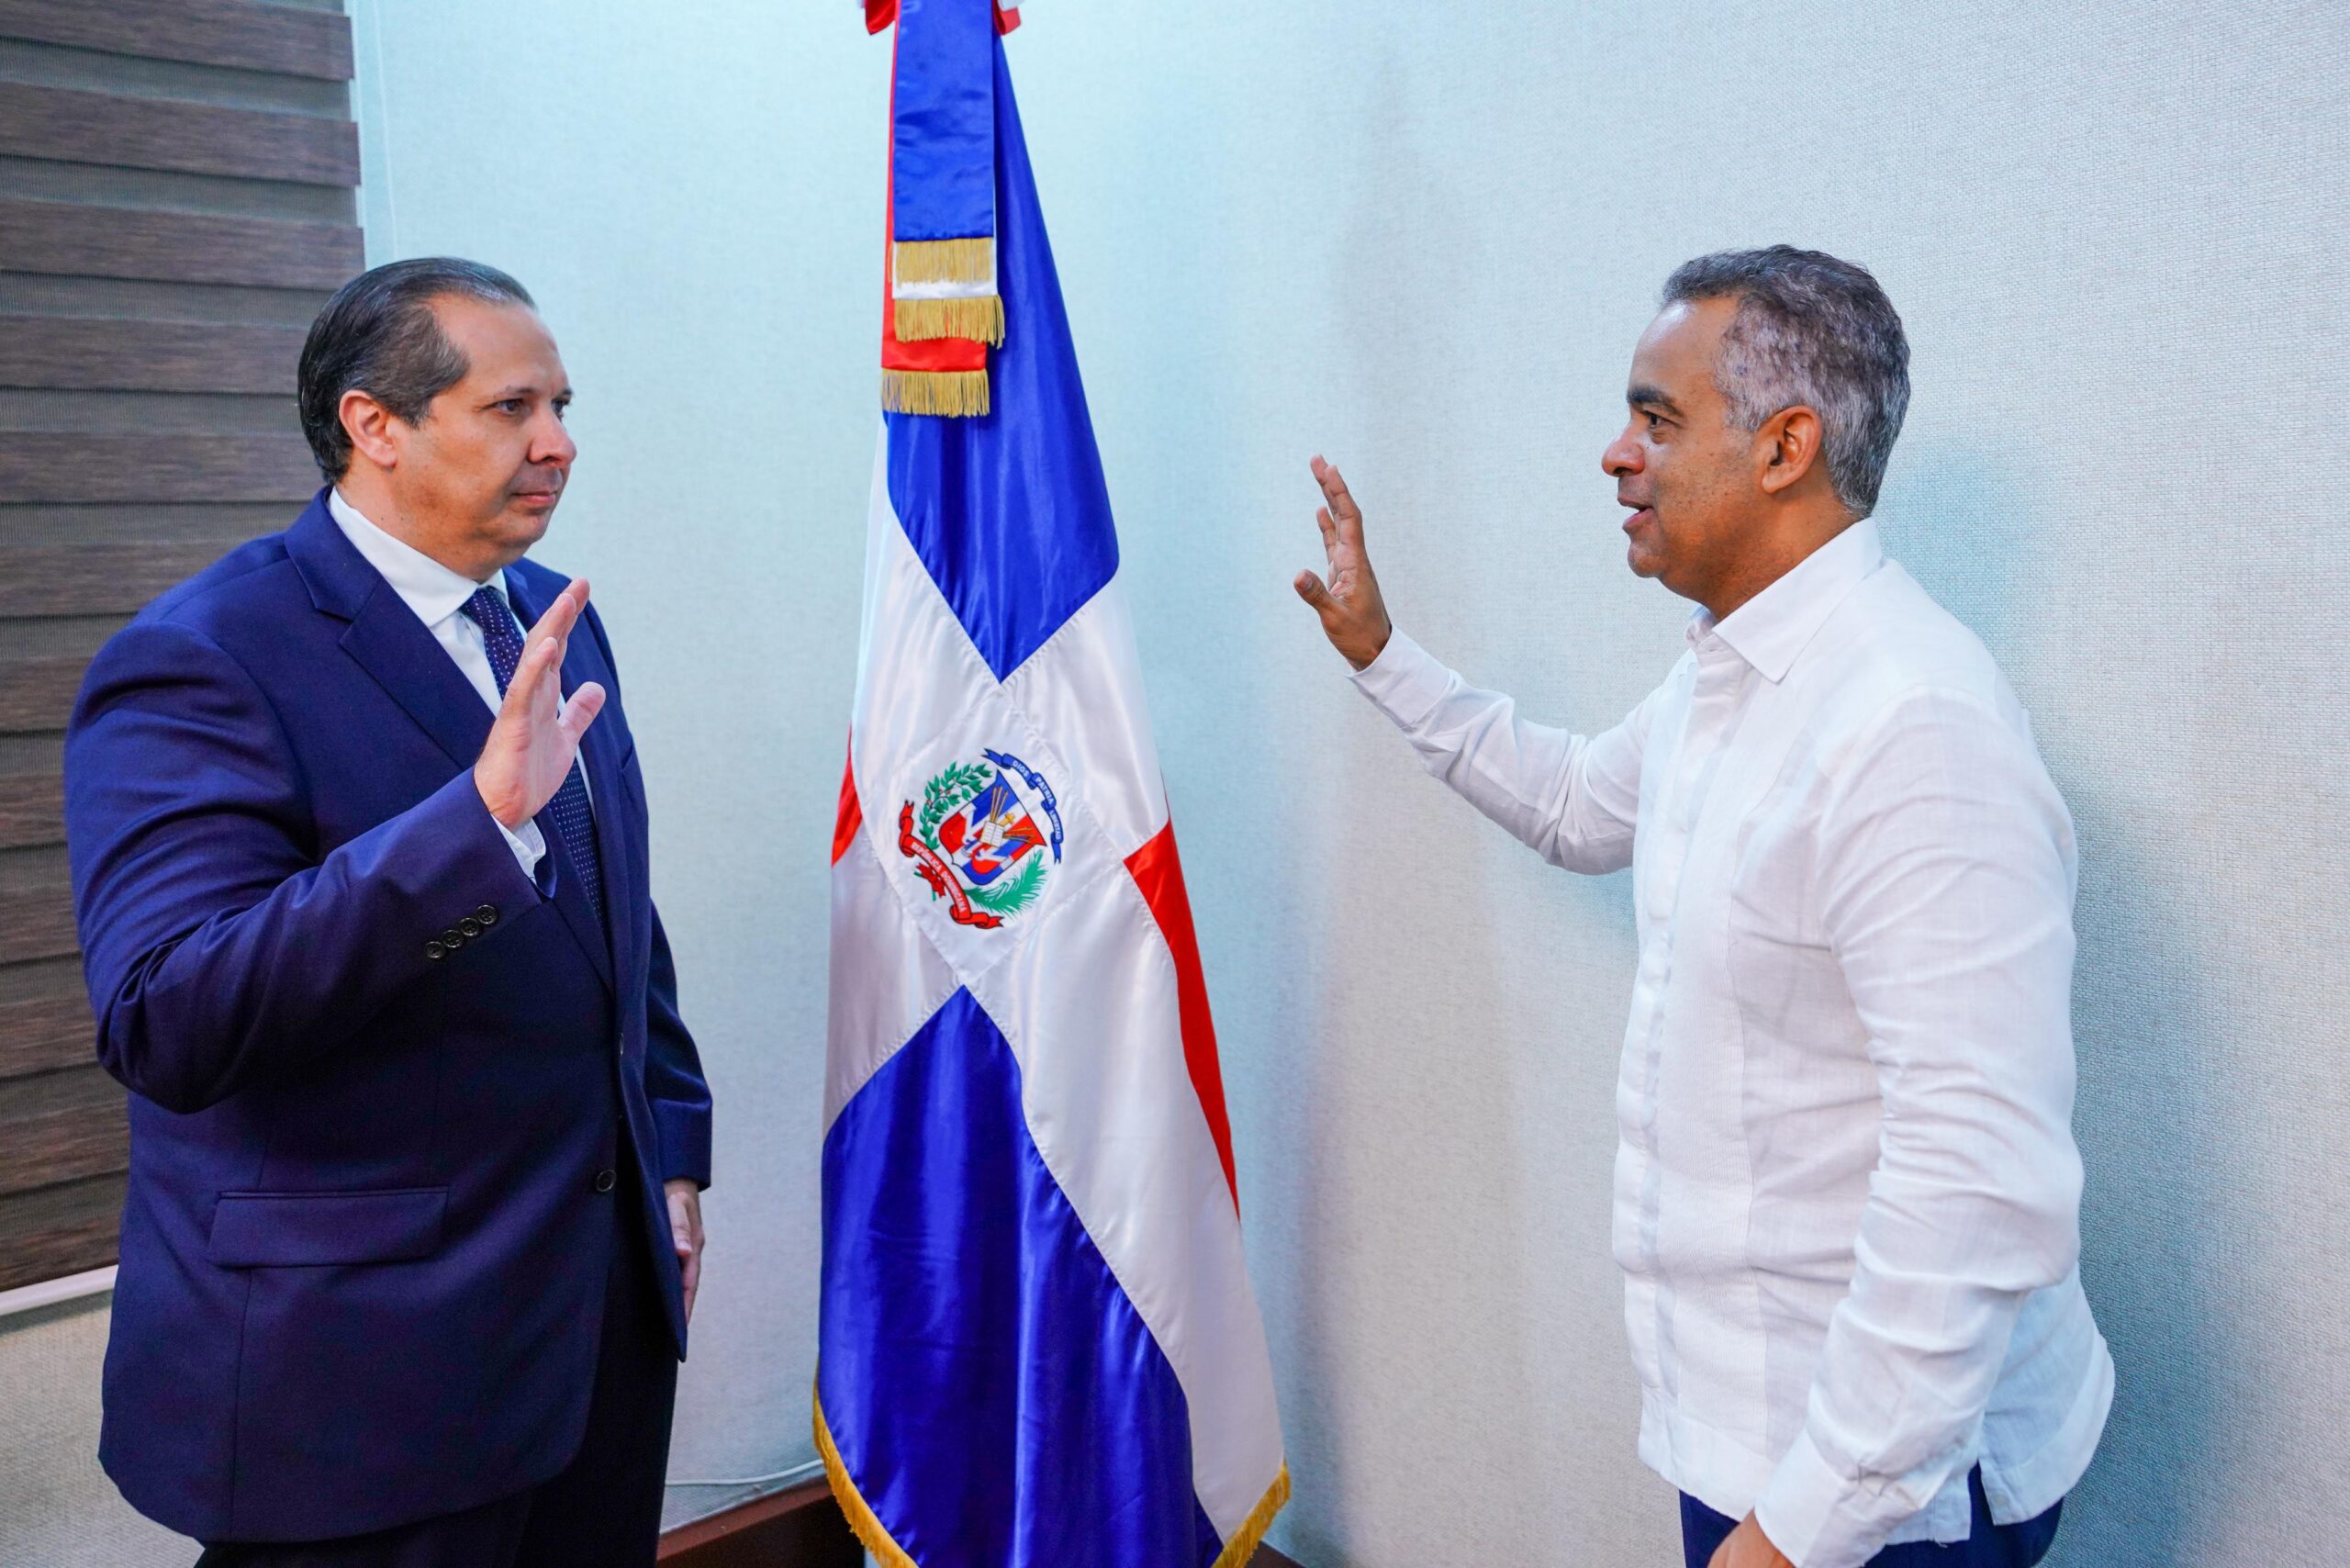 Ministro Santos Echavarría juramenta a Víctor Atallah, como nuevo ministro del Ministerio de Salud*